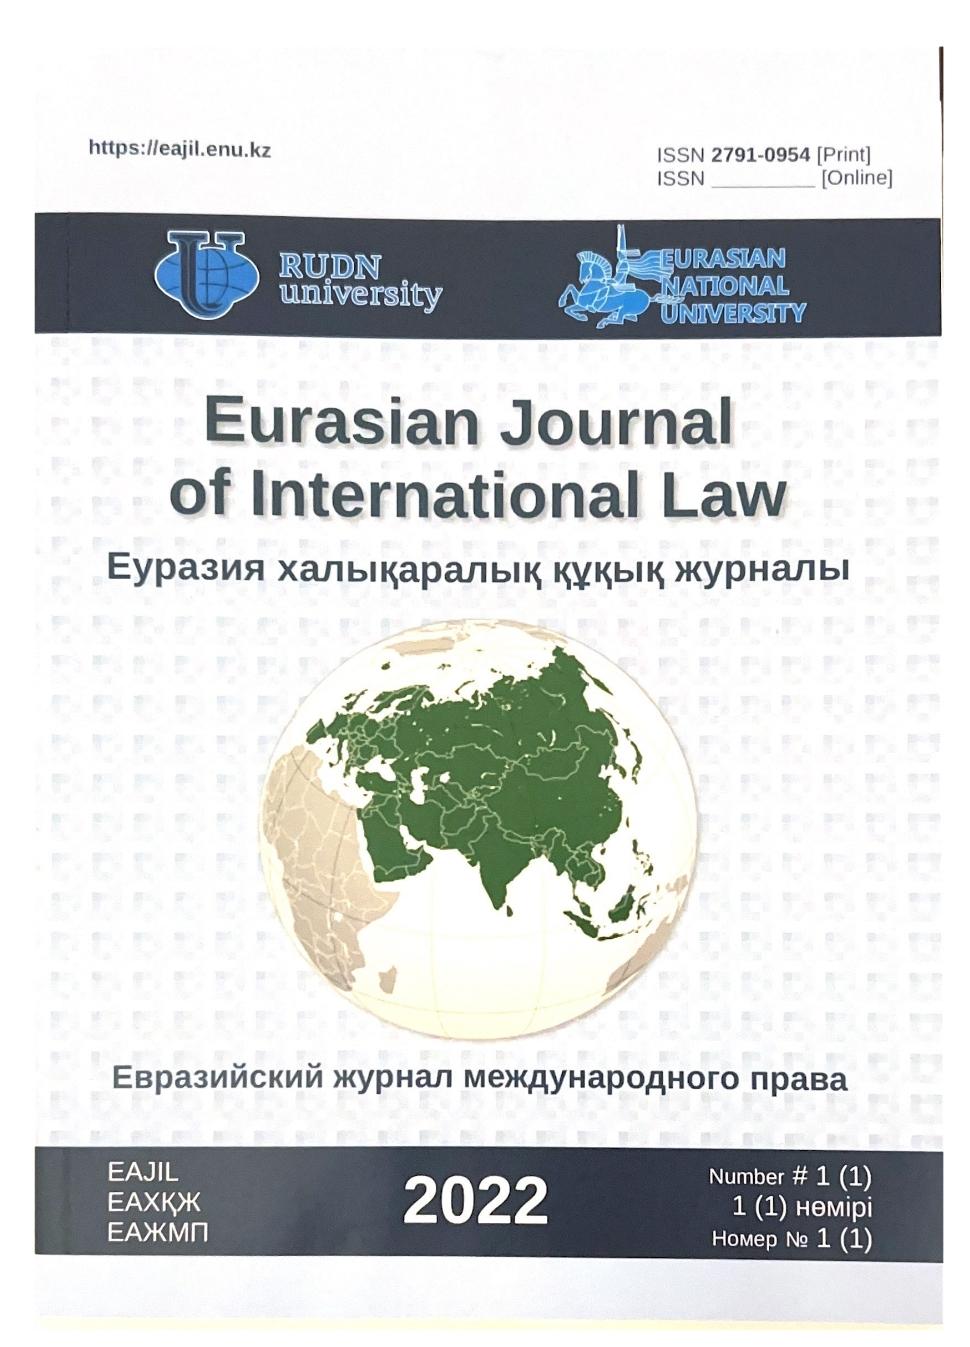 Опубликован первый номер Евразийского журнала международного права (ЕАЖМП)